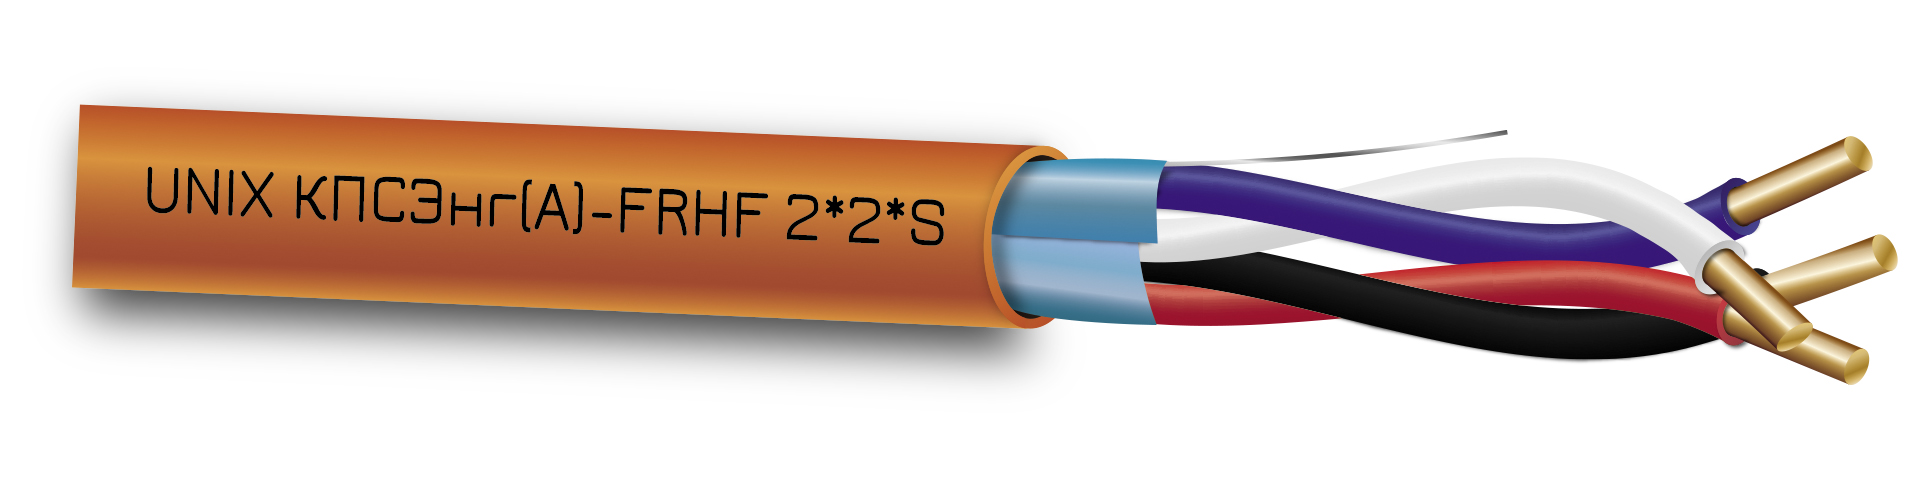 Огнестойкий кабель пожарной сигнализации. КПСЭНГ А -FRLS 2х2х0.75. КПСЭНГ(А)-FRHF 2х2х0,75. КПСЭНГ(А)-FRLS 2*2*0,5. Кабель КПСНГ(А)-FRHF 1х2х0,75.